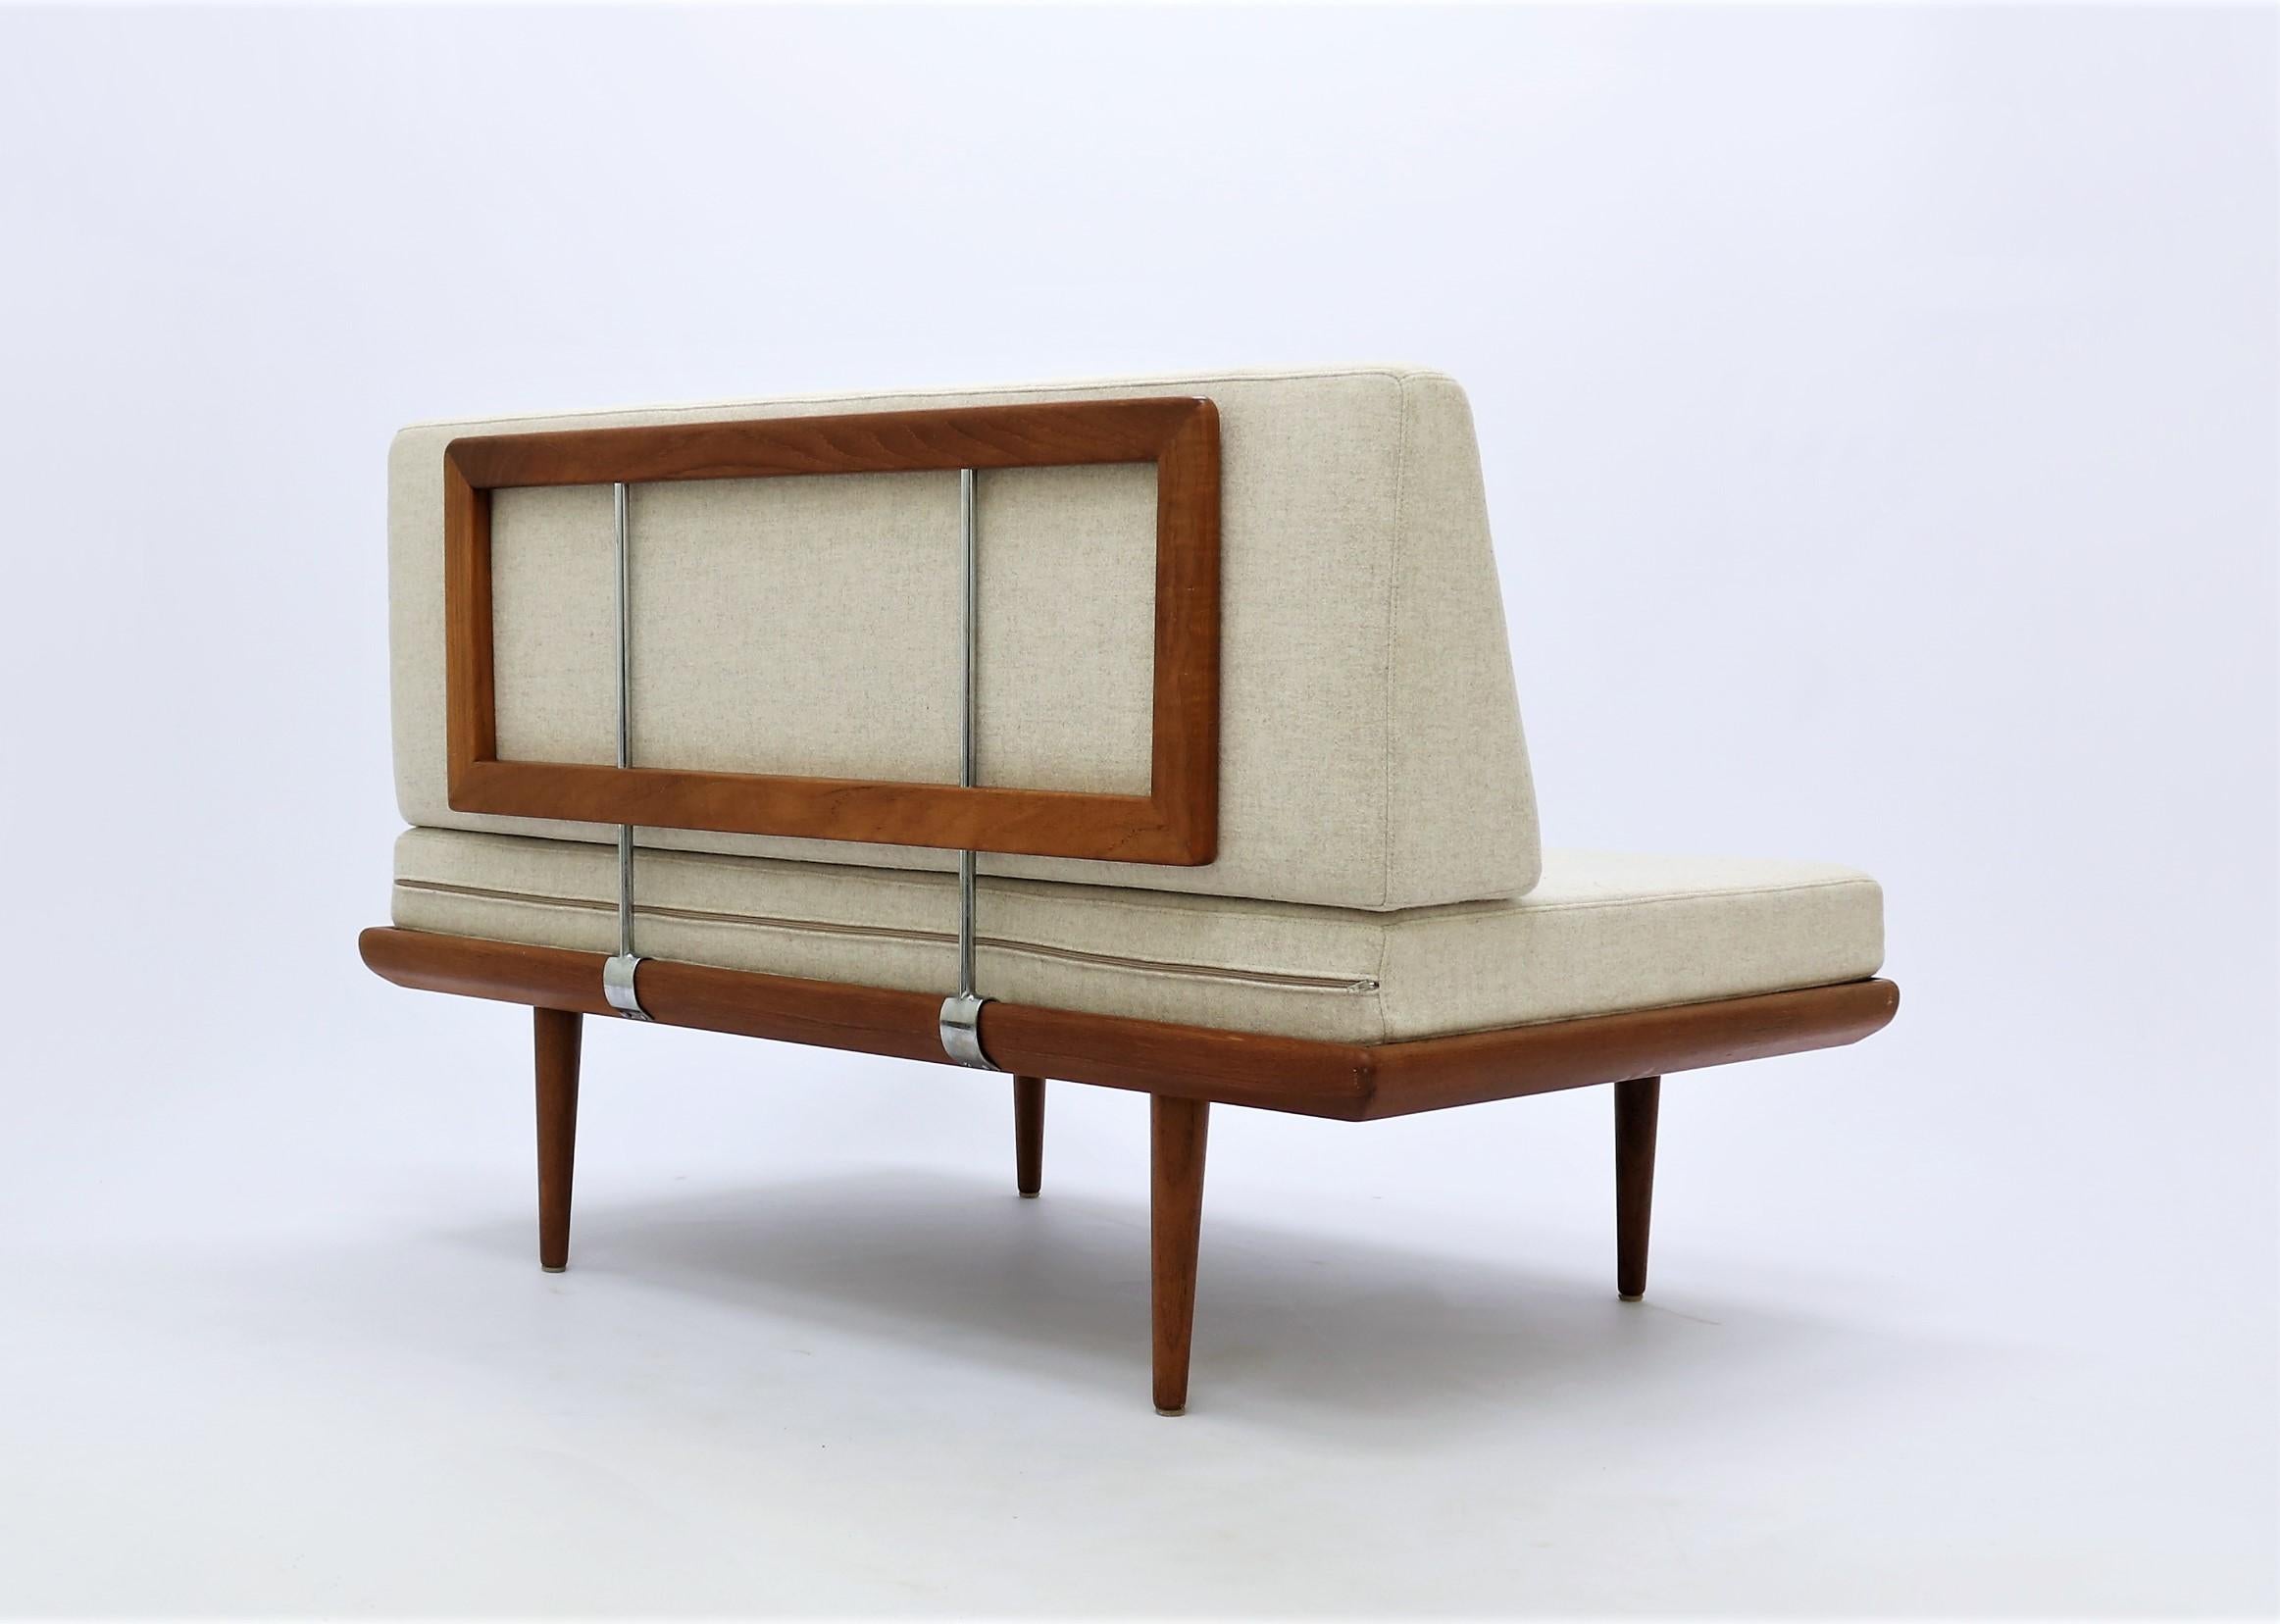 Hvidt & Molgaard Teakwood Two-Seat Sofa Model 